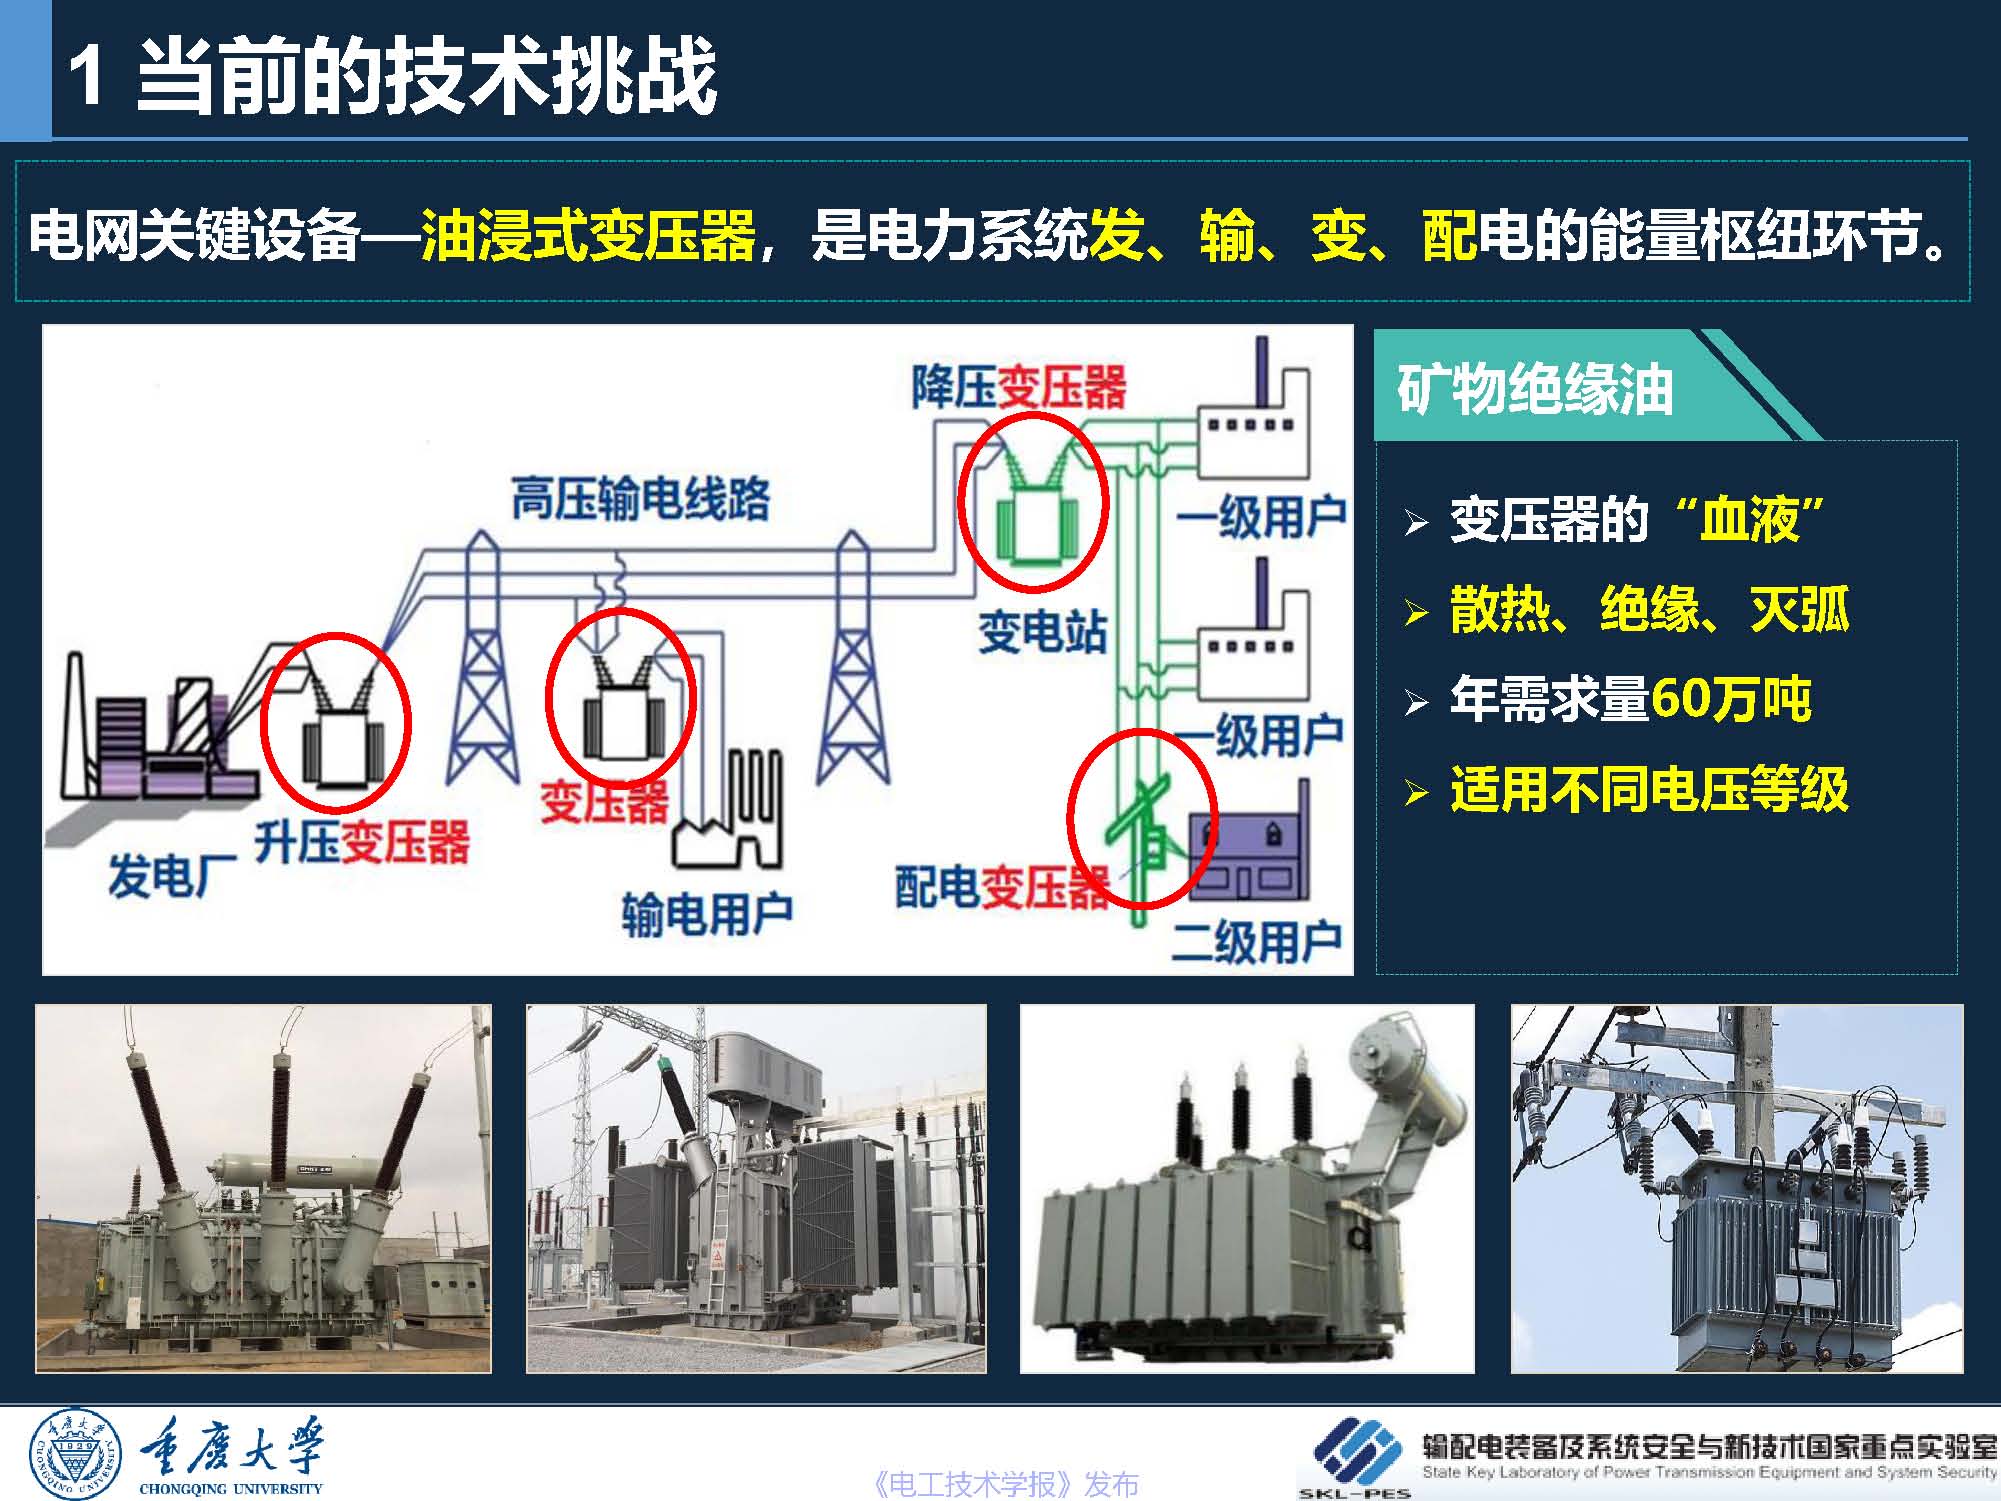 重庆大学 王飞鹏 研究员：环保安全的酯基绝缘油